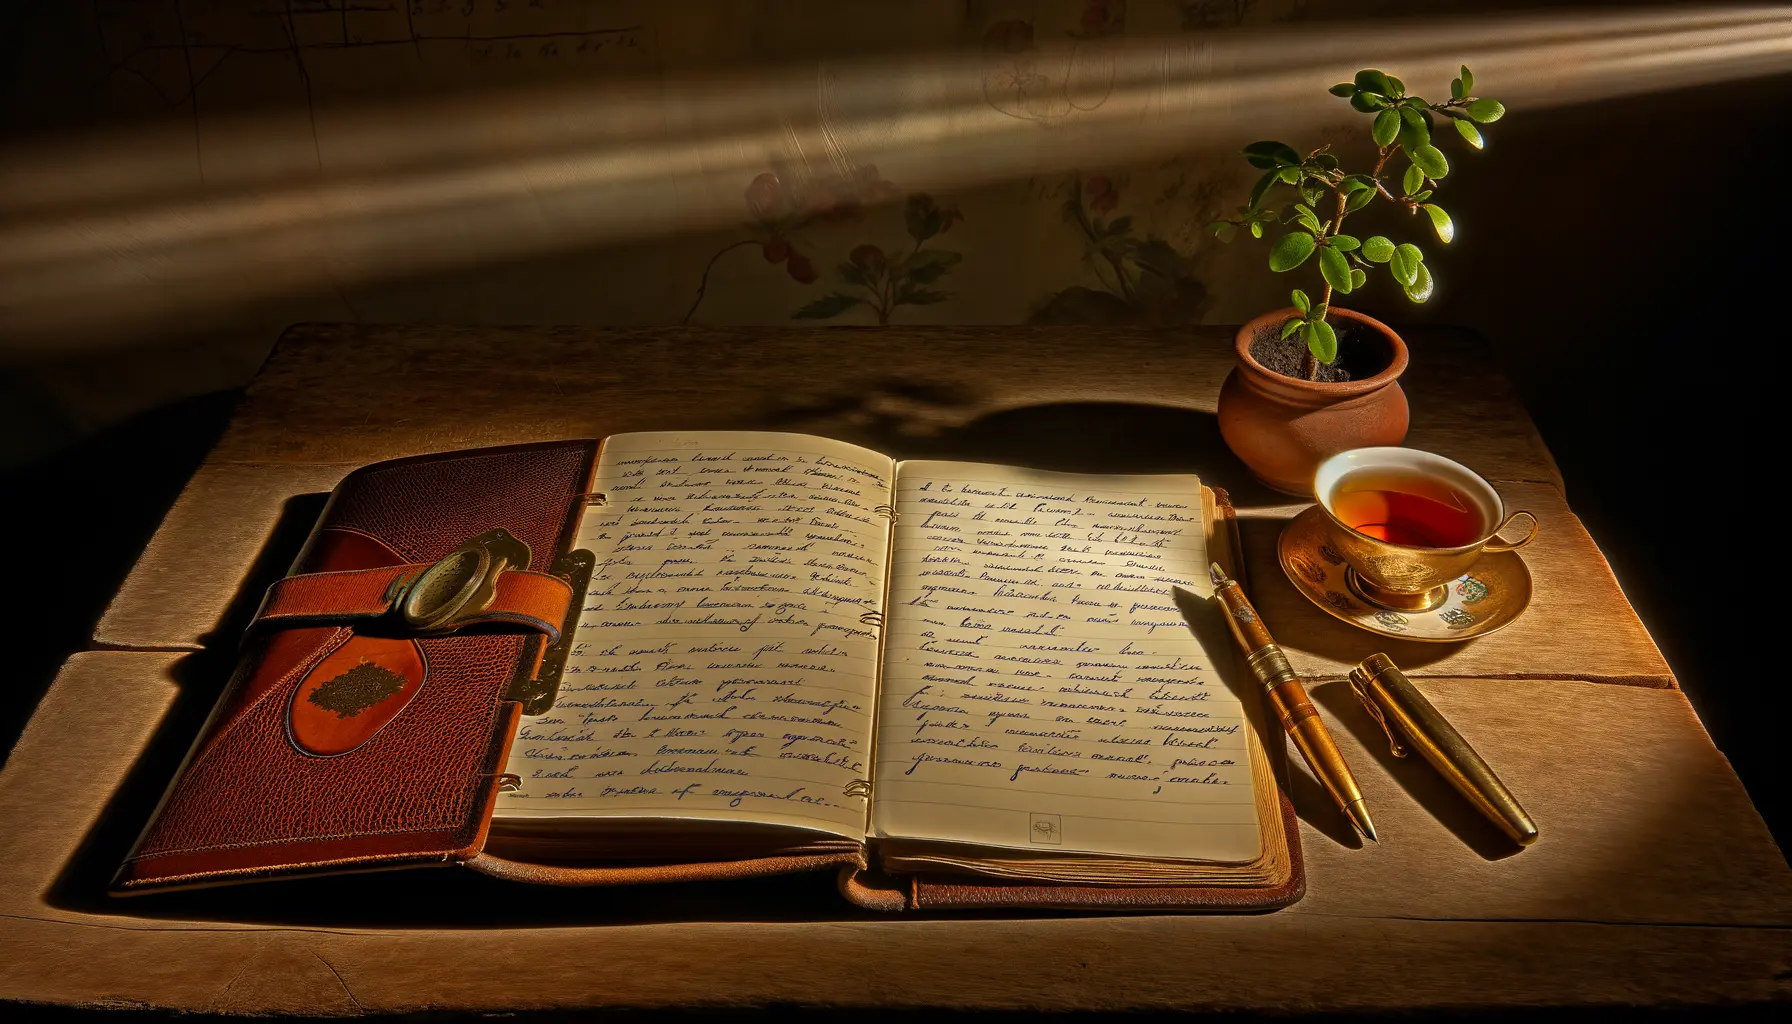 Halbgeöffnetes Tagebuch auf einem Holztisch.